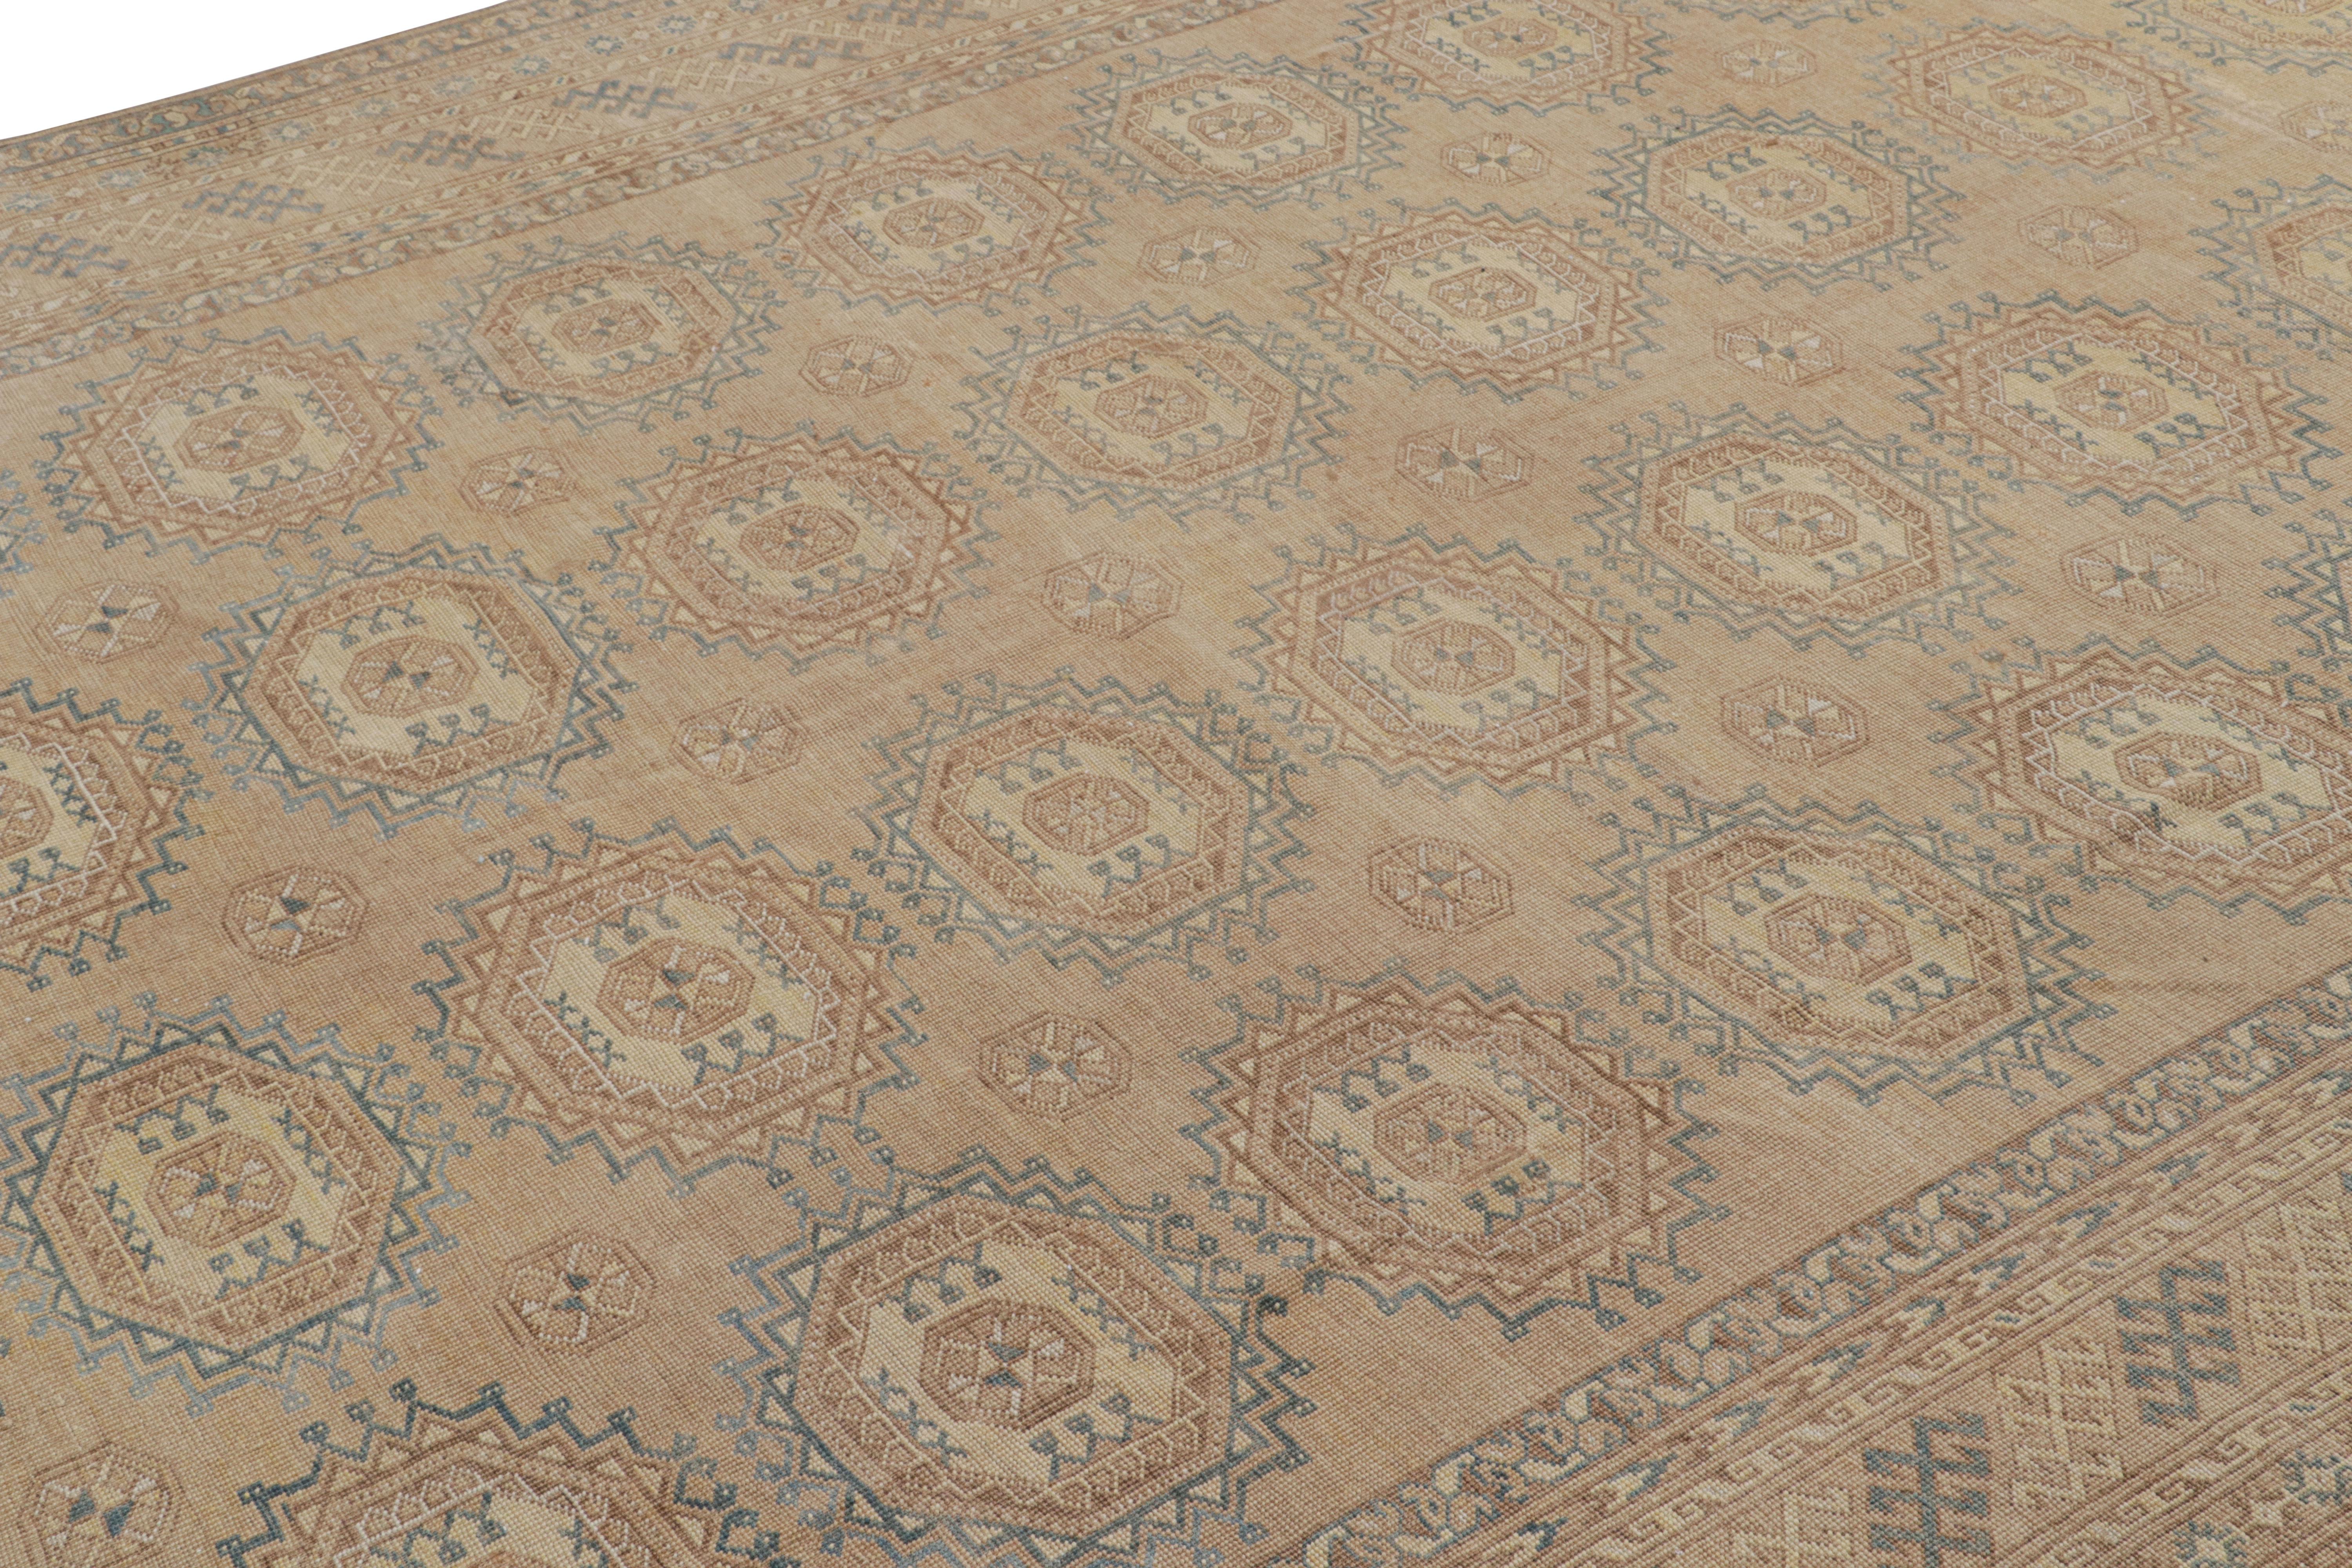 Ce 8x14  Ce tapis vintage serait un rare tapis Ersari du milieu du siècle, noué à la main en laine et originaire de Turquie vers 1950-1960.

Sur le Design :

Les Ersari sont une sous-tribu du peuple turkmène, souvent connue pour ses dessins de tapis